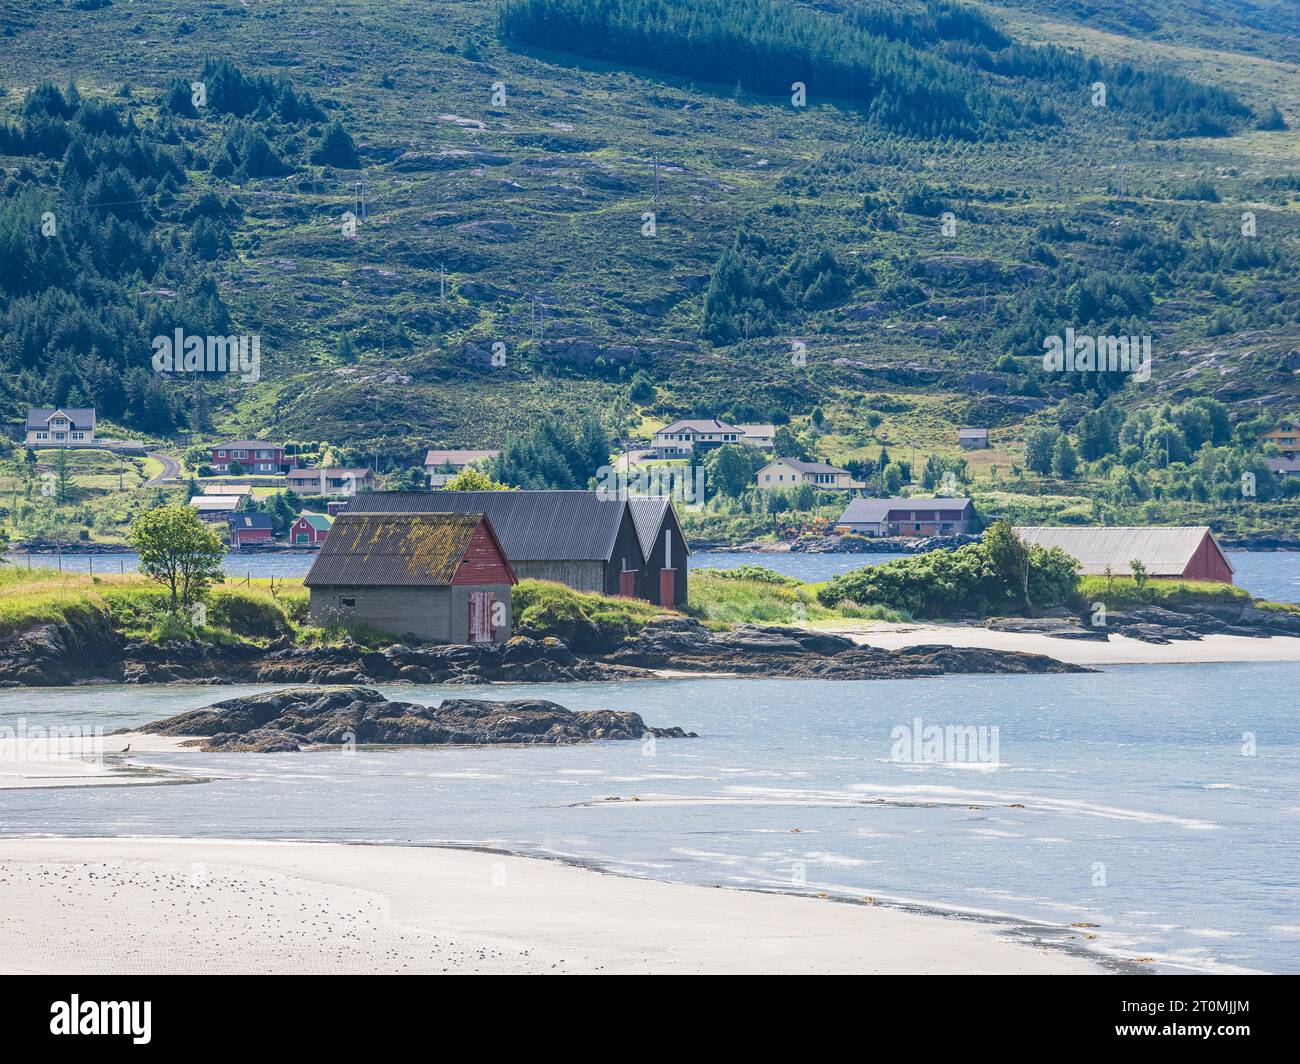 Beauté côtière : plage de Norvège, maisons de bateau, cabanes, arbres, et paysage naturel serein. Banque D'Images